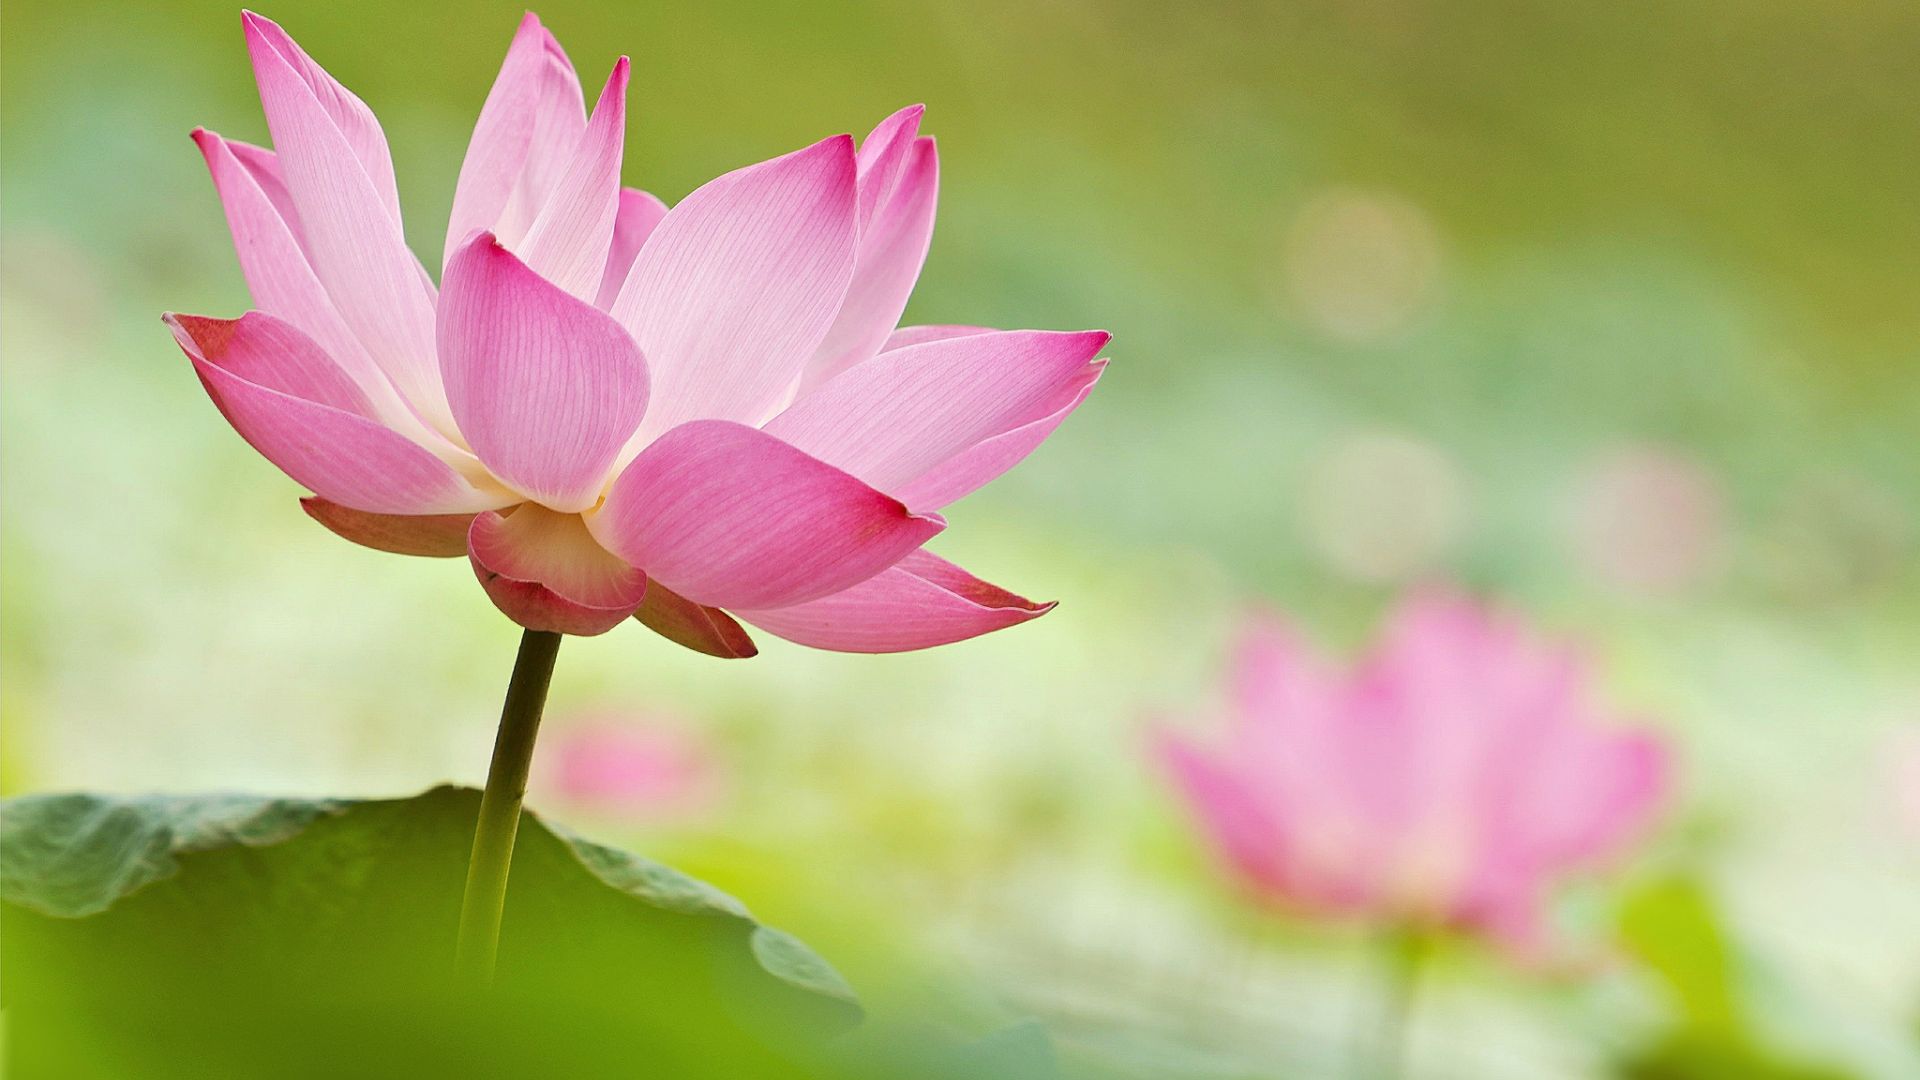 Bông trúc đào hồng Việt Nam – một loài hoa rất thơm và rất đẹp, luôn trở thành nguồn cảm hứng cho các họa sĩ và nhà thiết kế. Chúng ta hãy cùng chiêm ngưỡng hình ảnh bông trúc đào hồng Việt Nam trên những hình ảnh liên quan.